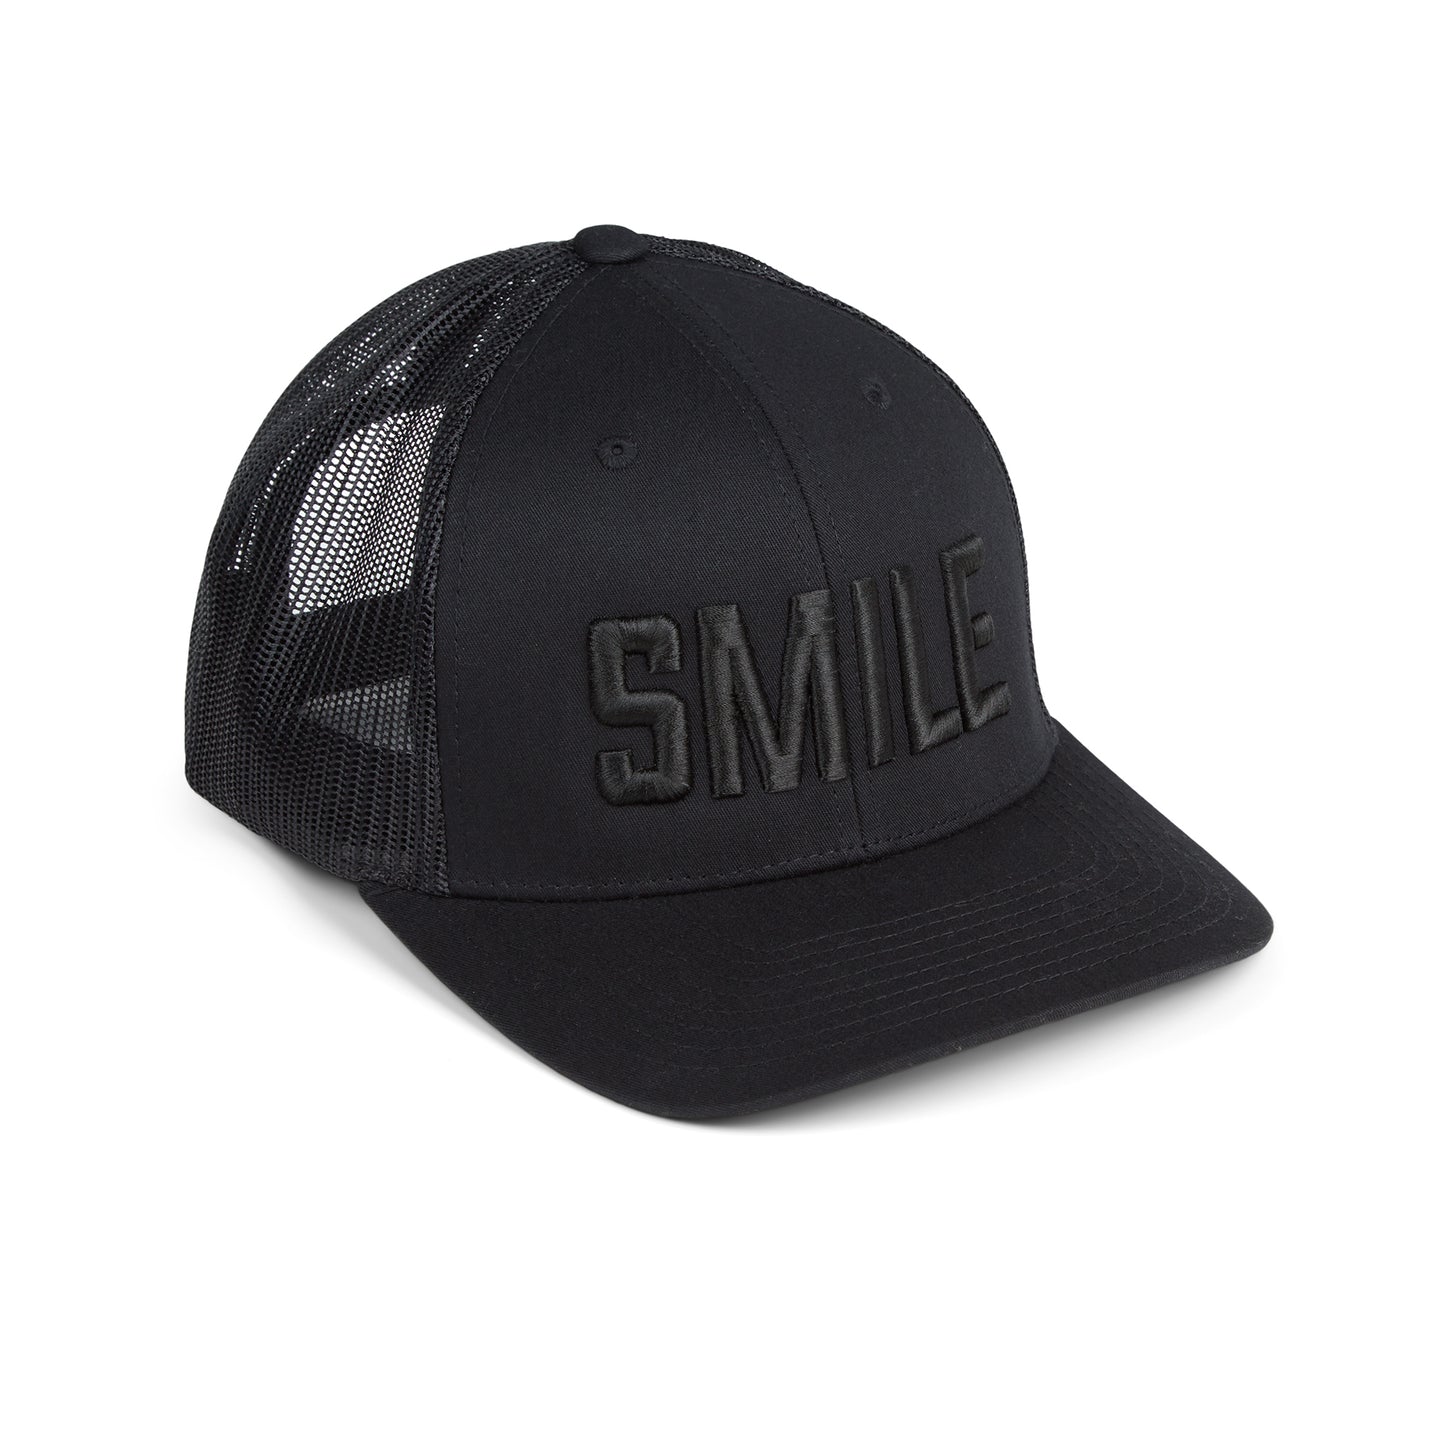 SMILE trucker hat